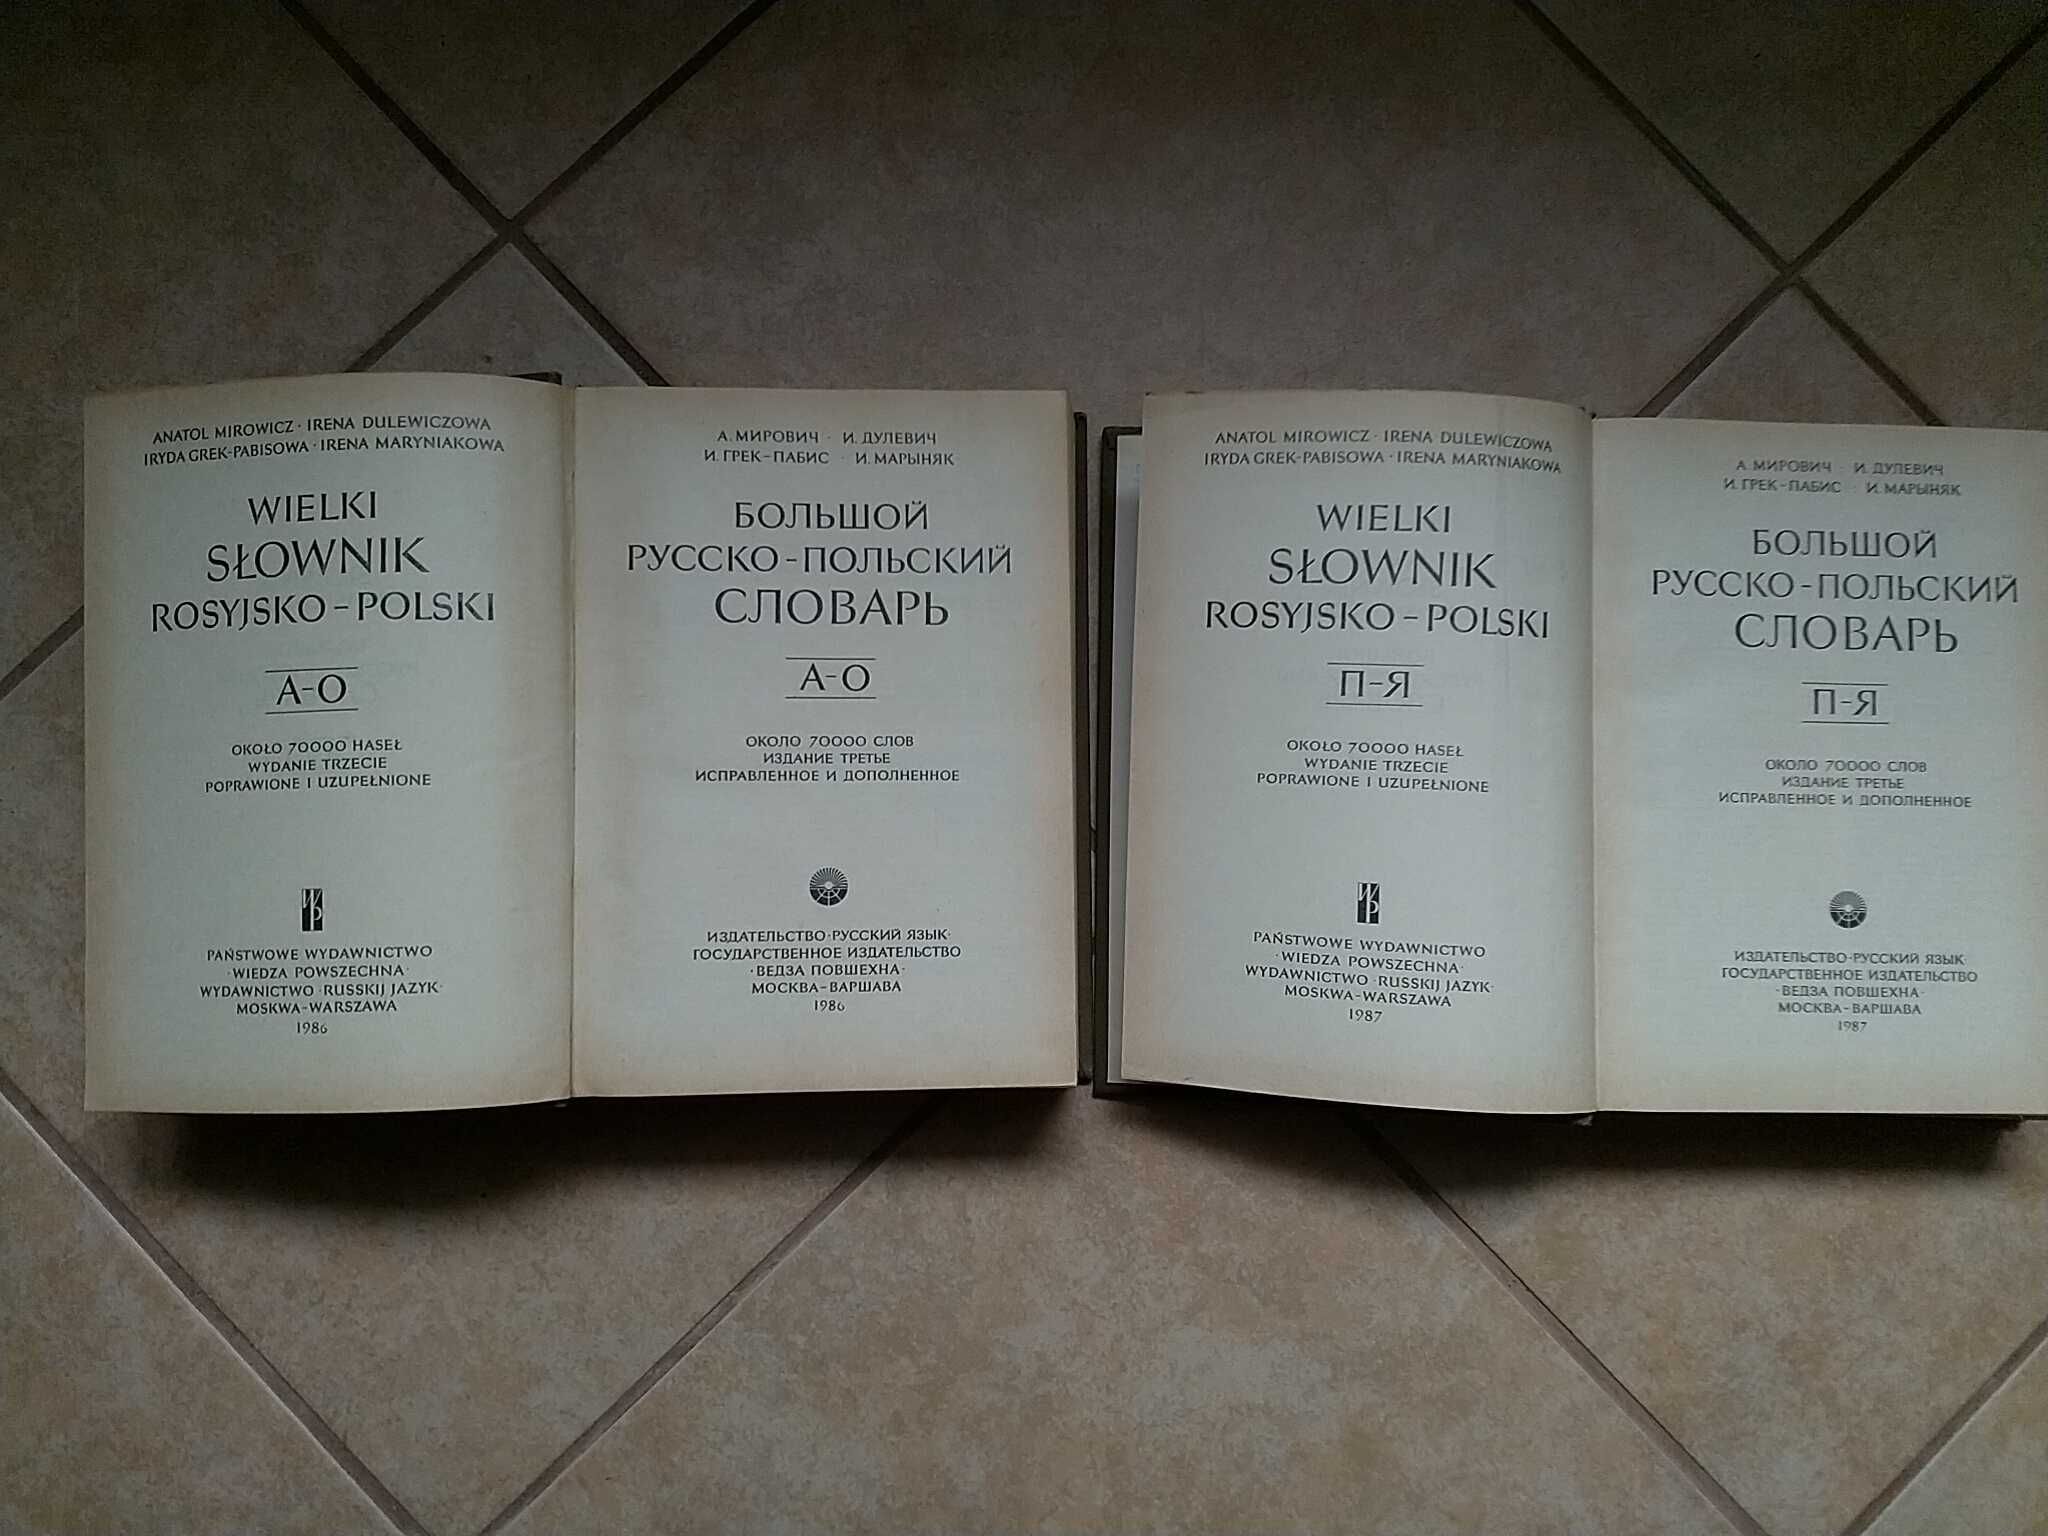 Wielki słownik rosyjsko-polski, tom 1, 2, Wiedza Powszechna, 1987